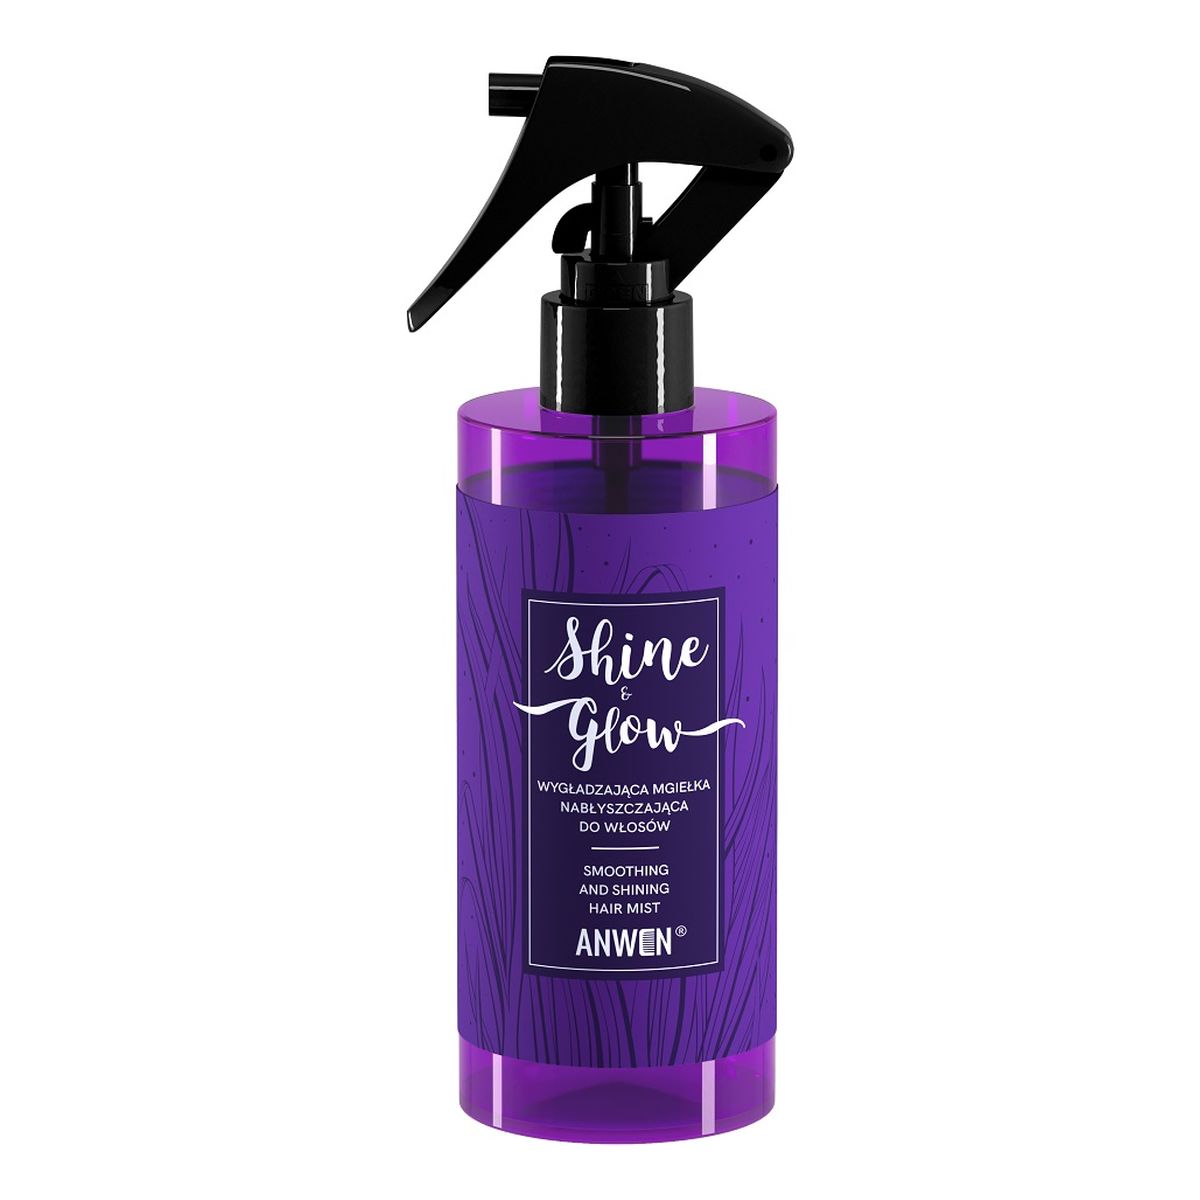 Anwen Shine & Glow Wygładzająca mgiełka nabłyszczająca do włosów 150ml